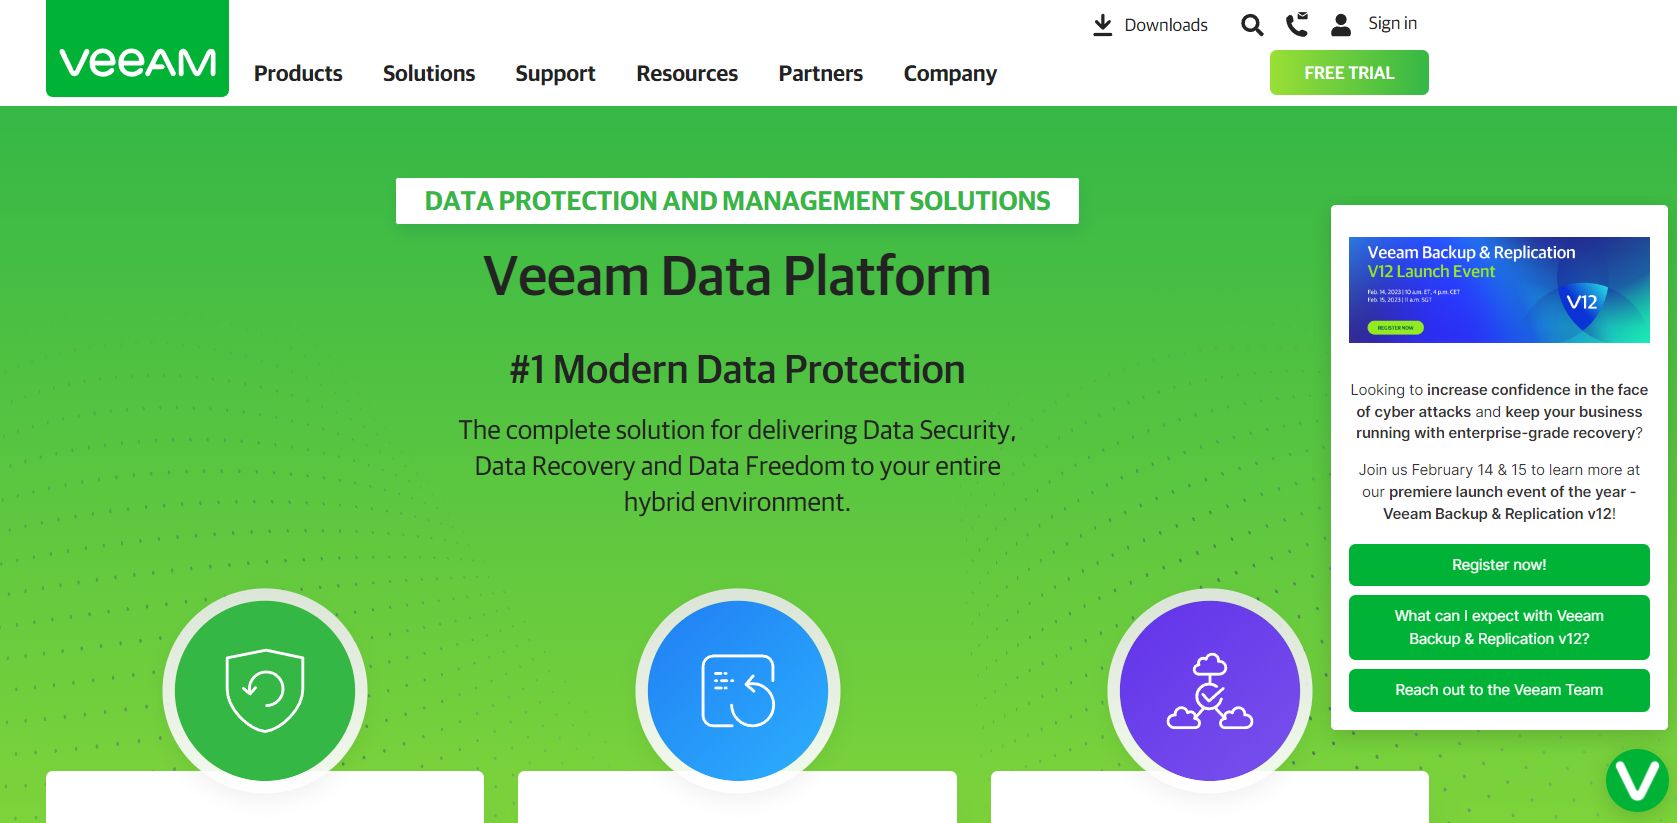 NUOVA Veeam Data Platform